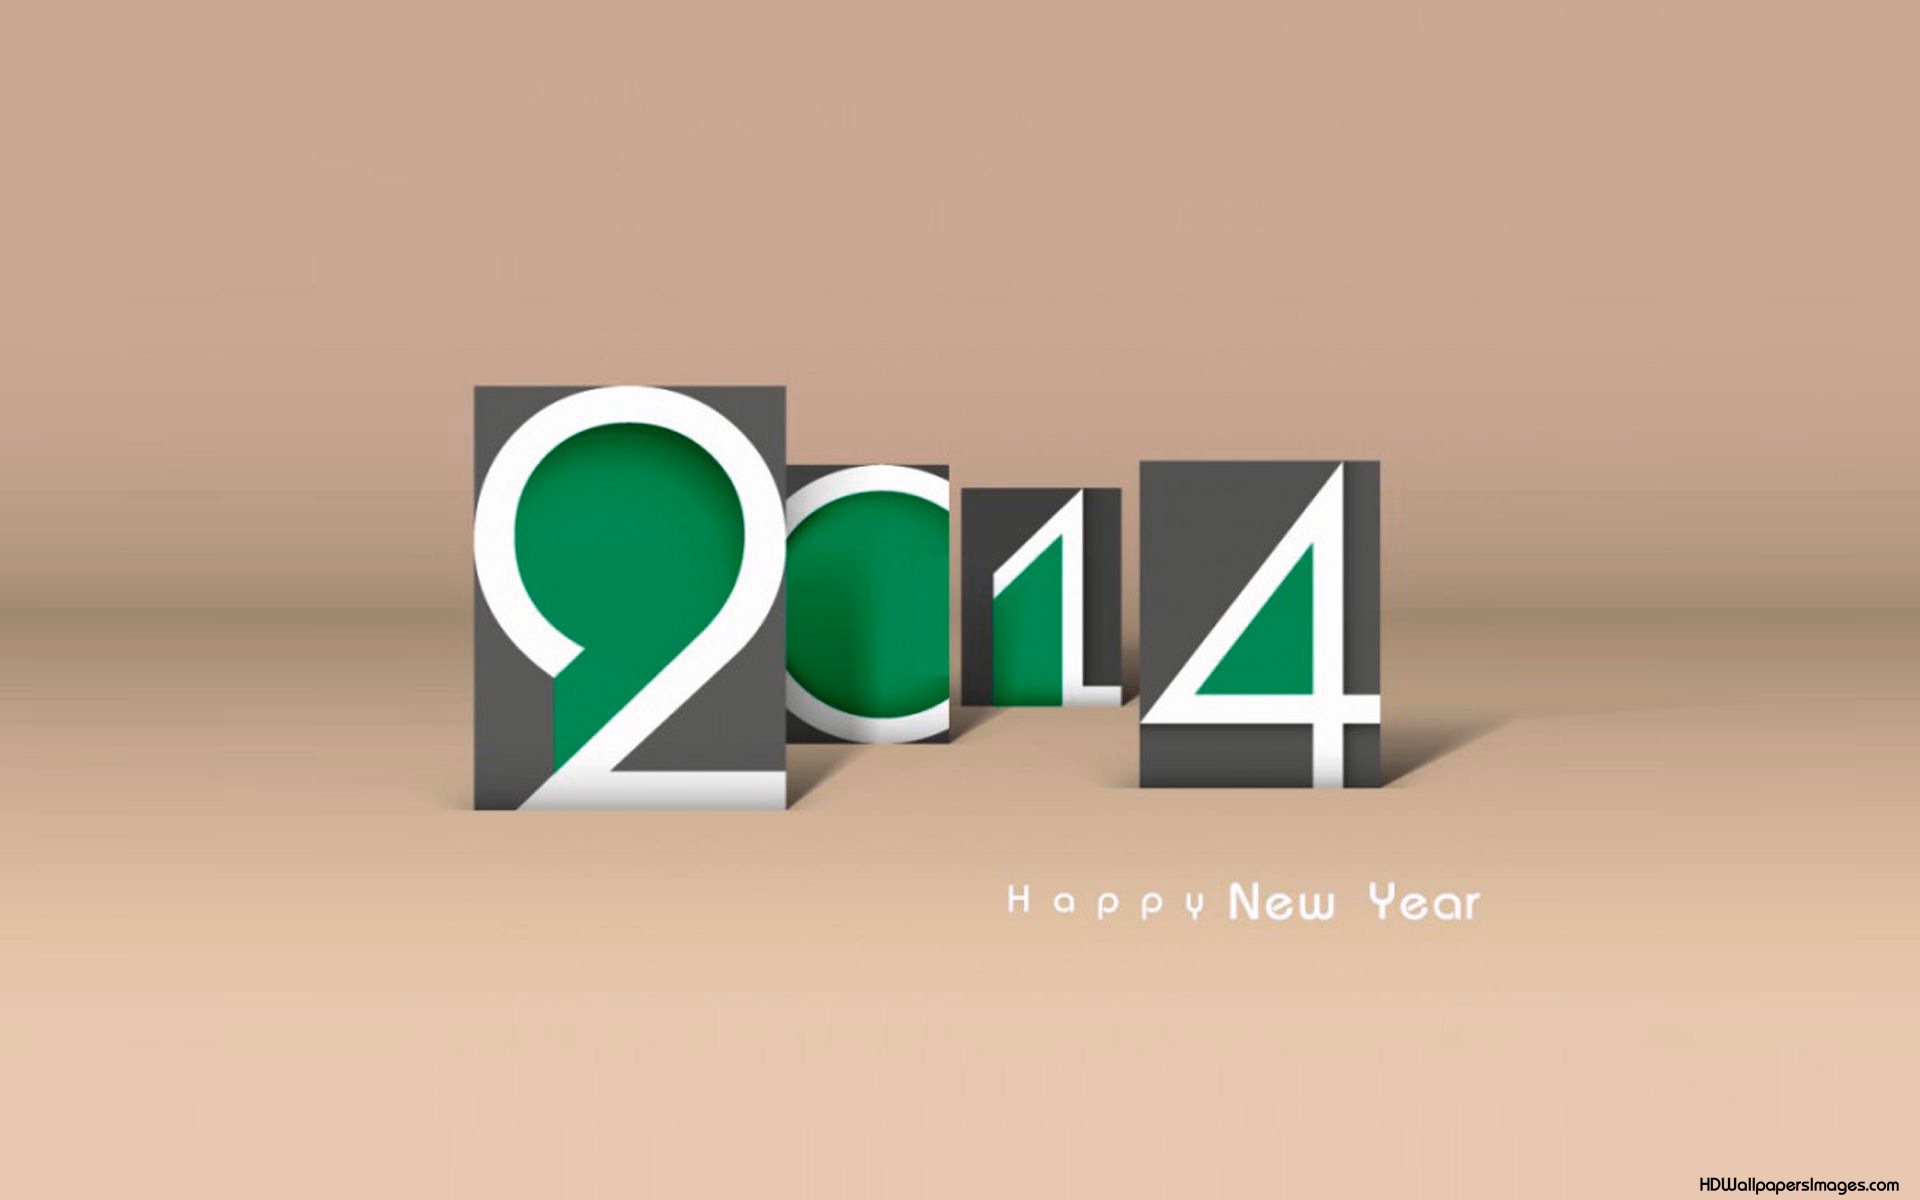 صور وخلفيات بمناسبة راس السنة الميلادية 2014 Happy New Year